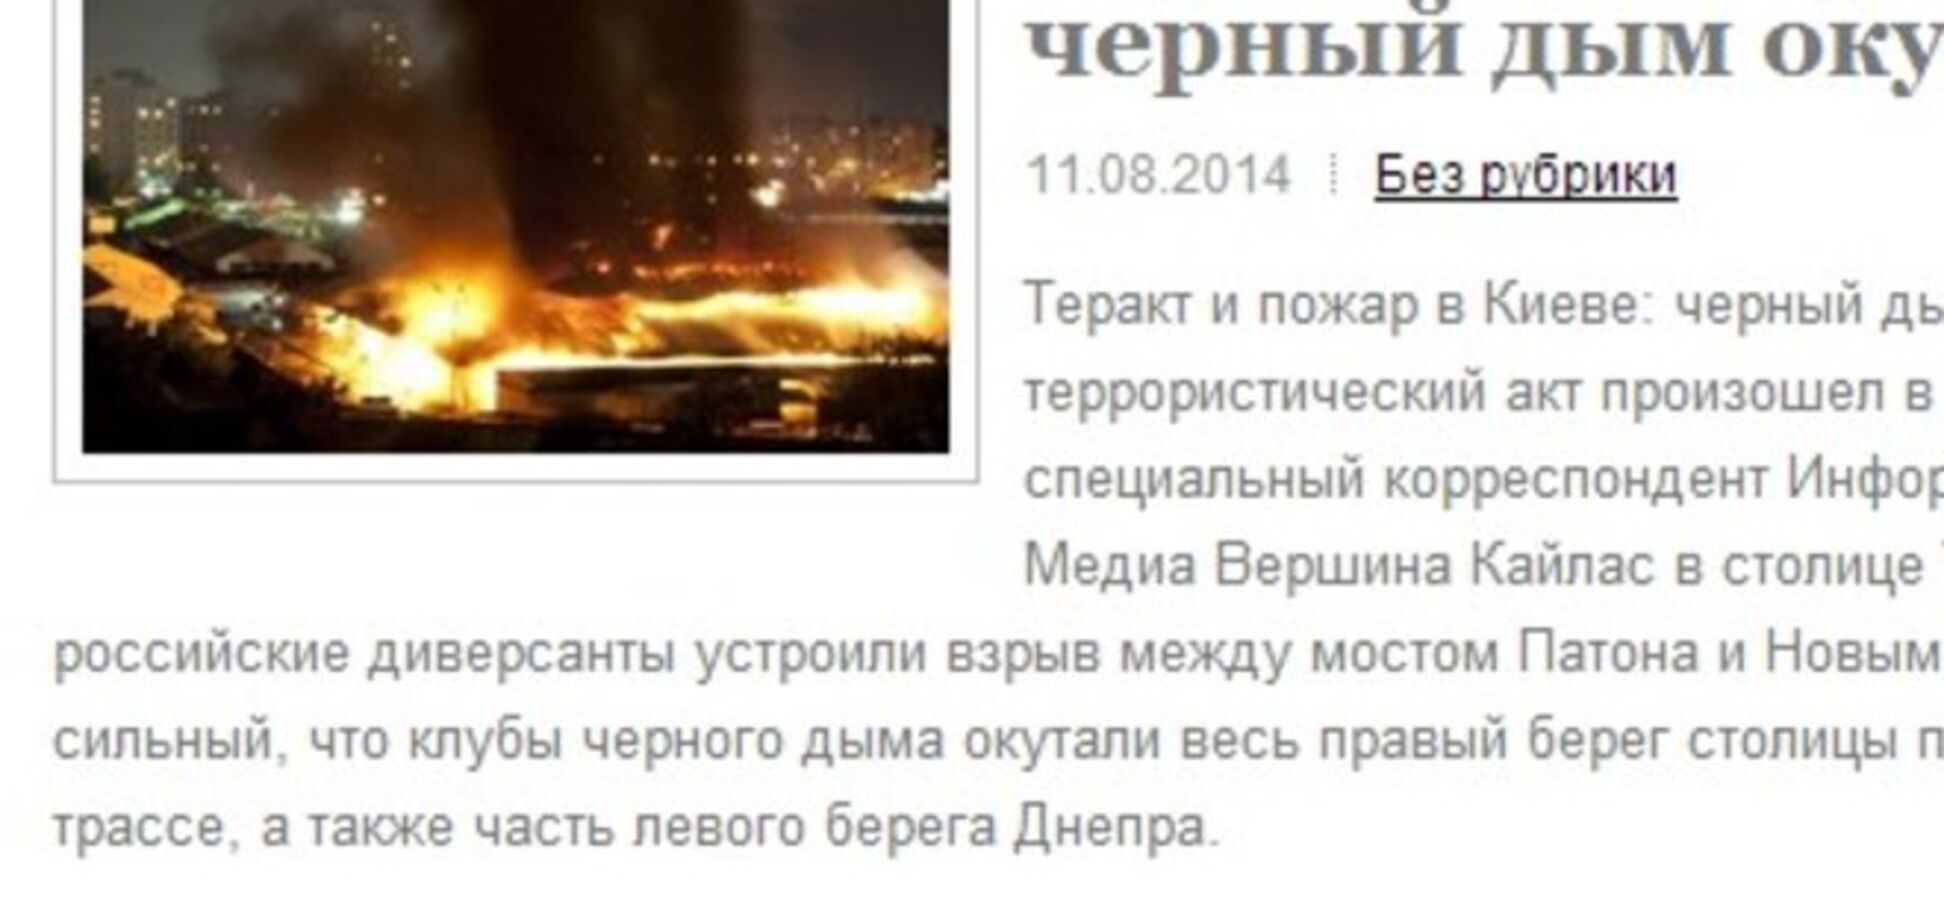 СМИ распространили фейковую информацию о теракте в Киеве